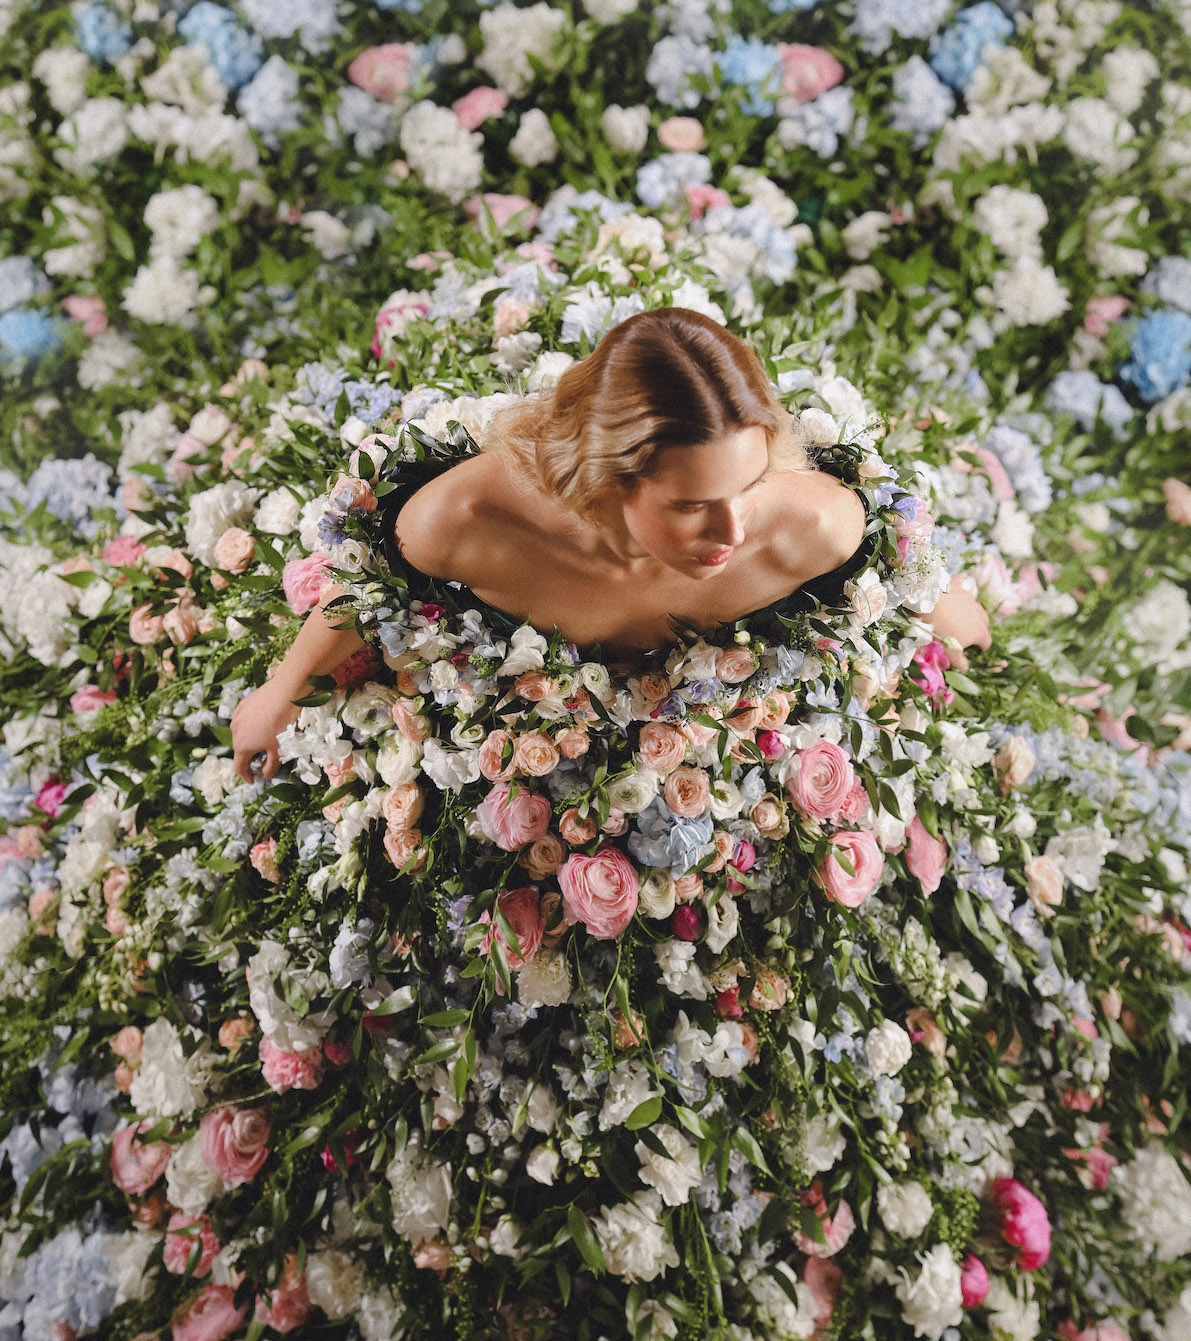 Природа в моде: Vladiyan Royal удивил мир уникальным свадебным платьем из живых цветов.